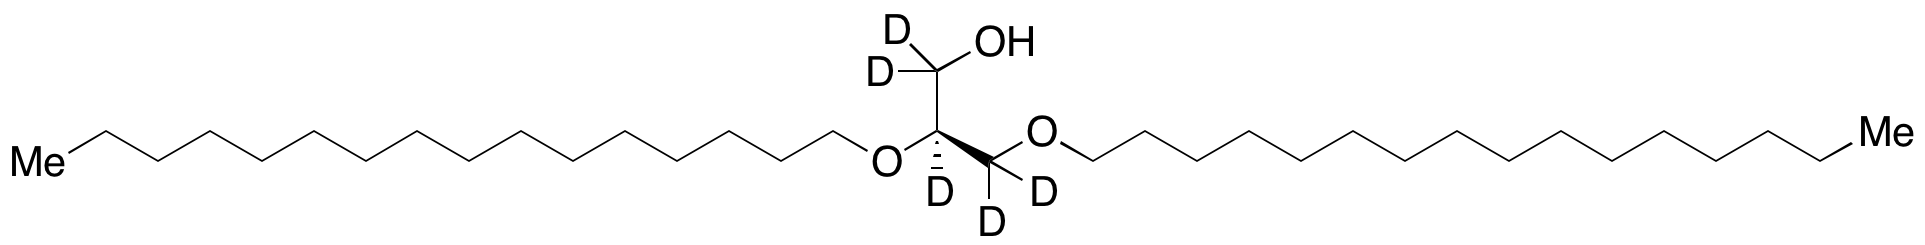 1,2-O-Dihexadecyl-sn-glycerol-d<sub>5</sub>